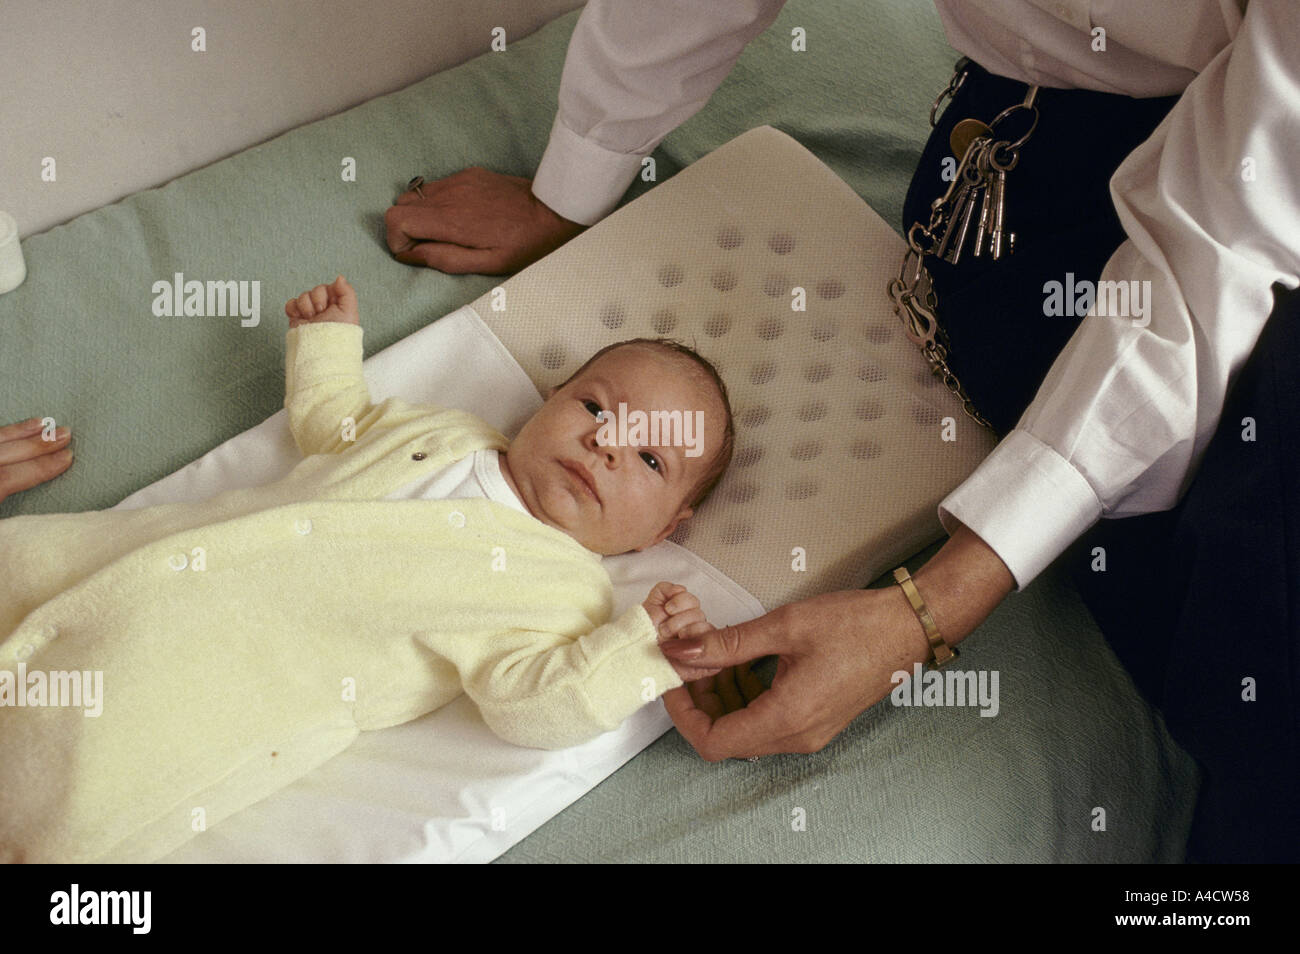 Un bébé se trouve sur un lit, des montres par un officier de la prison. Banque D'Images